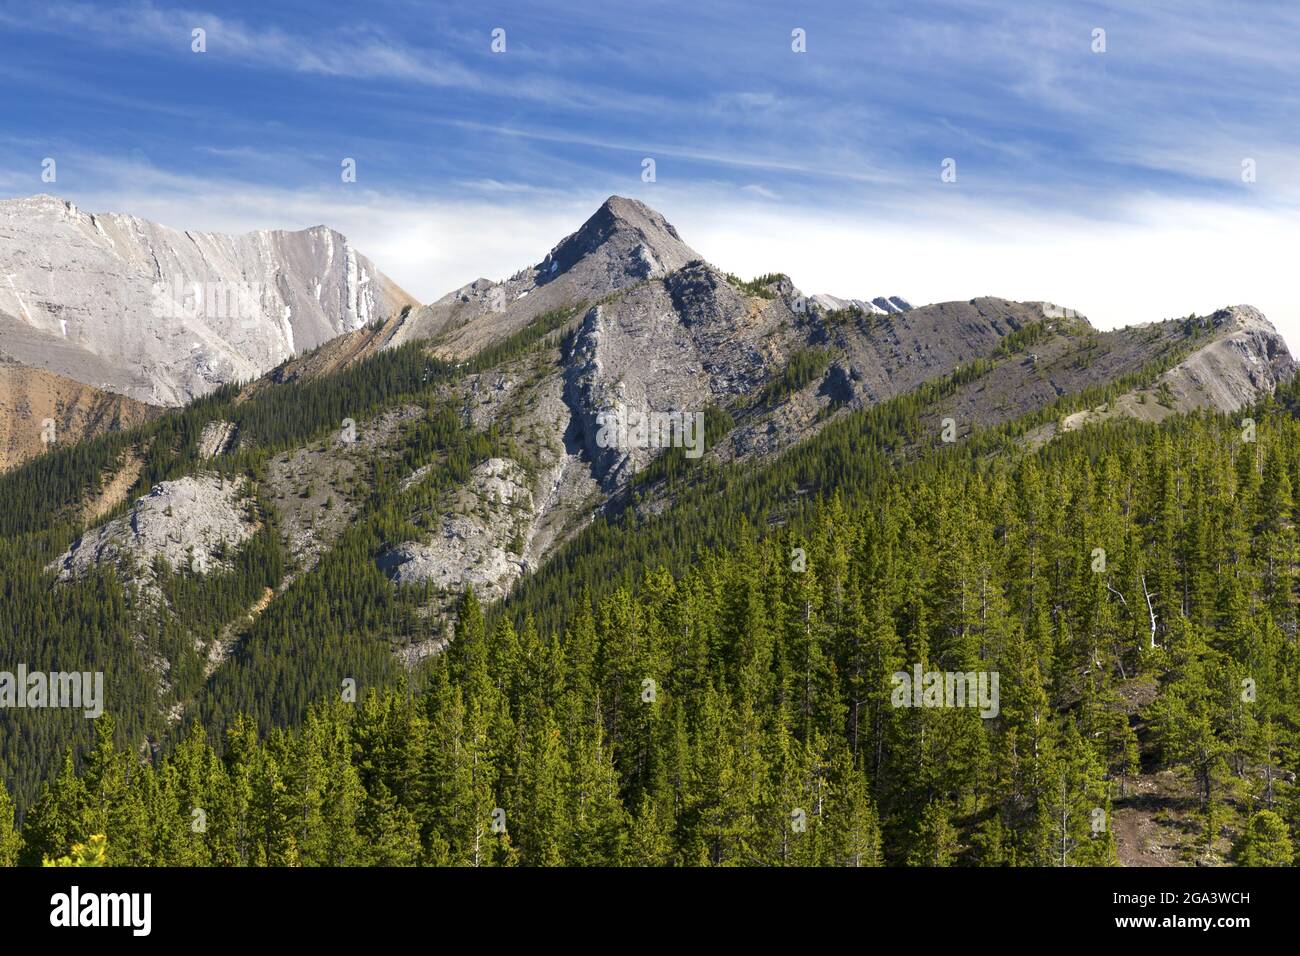 Kananaskis Country Scenic Landscape Blick auf den Wasootch Mountain Peak und die Waldhänge in den Ausläufern der kanadischen Rocky Mountains in Alberta Stockfoto